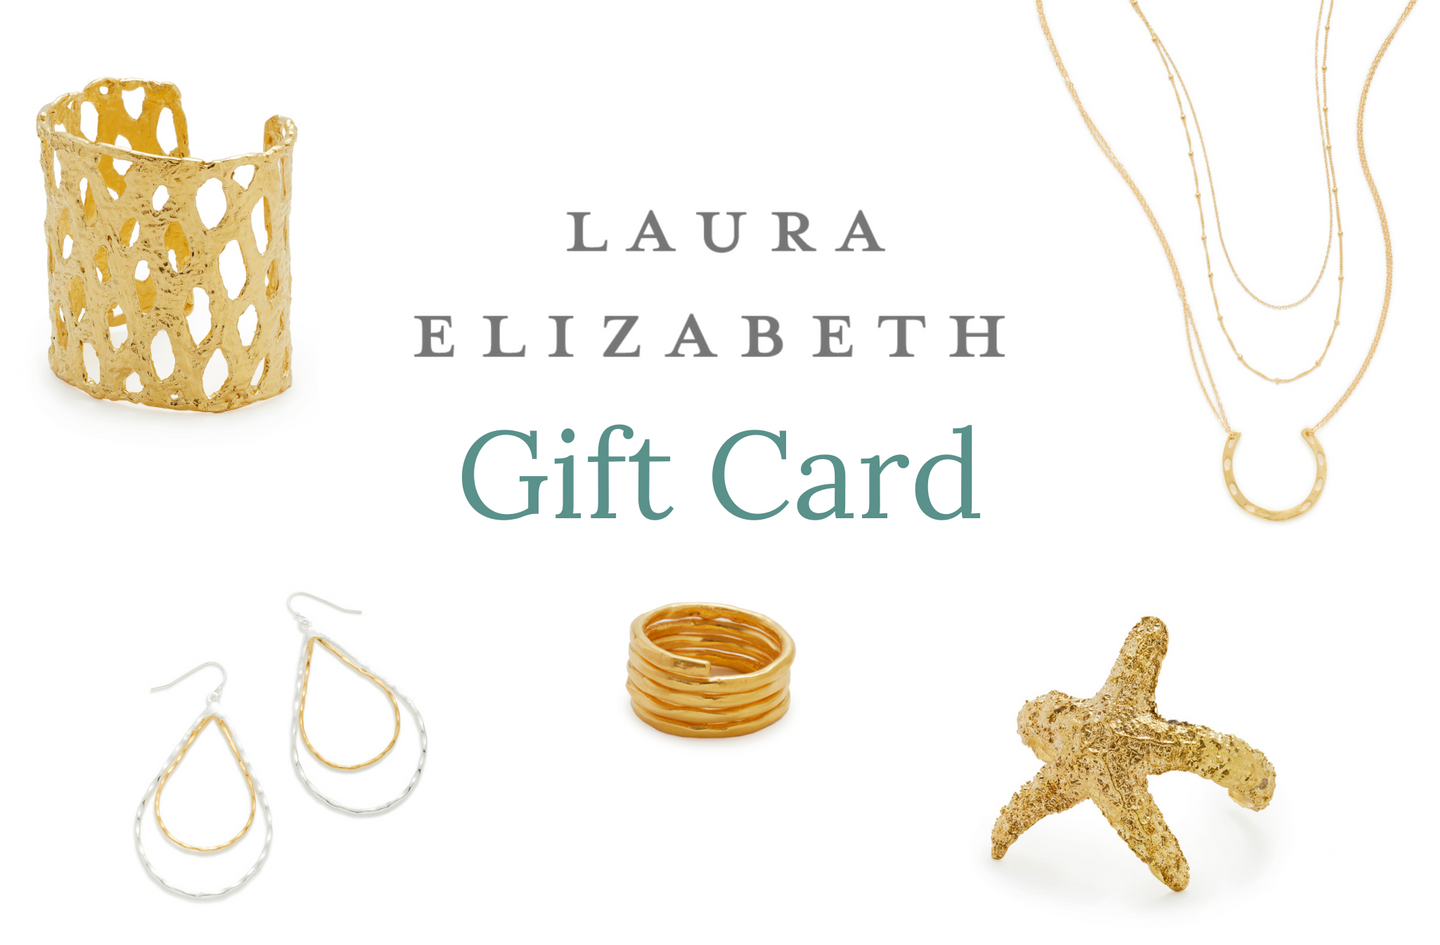 Laura Elizabeth Gift Card